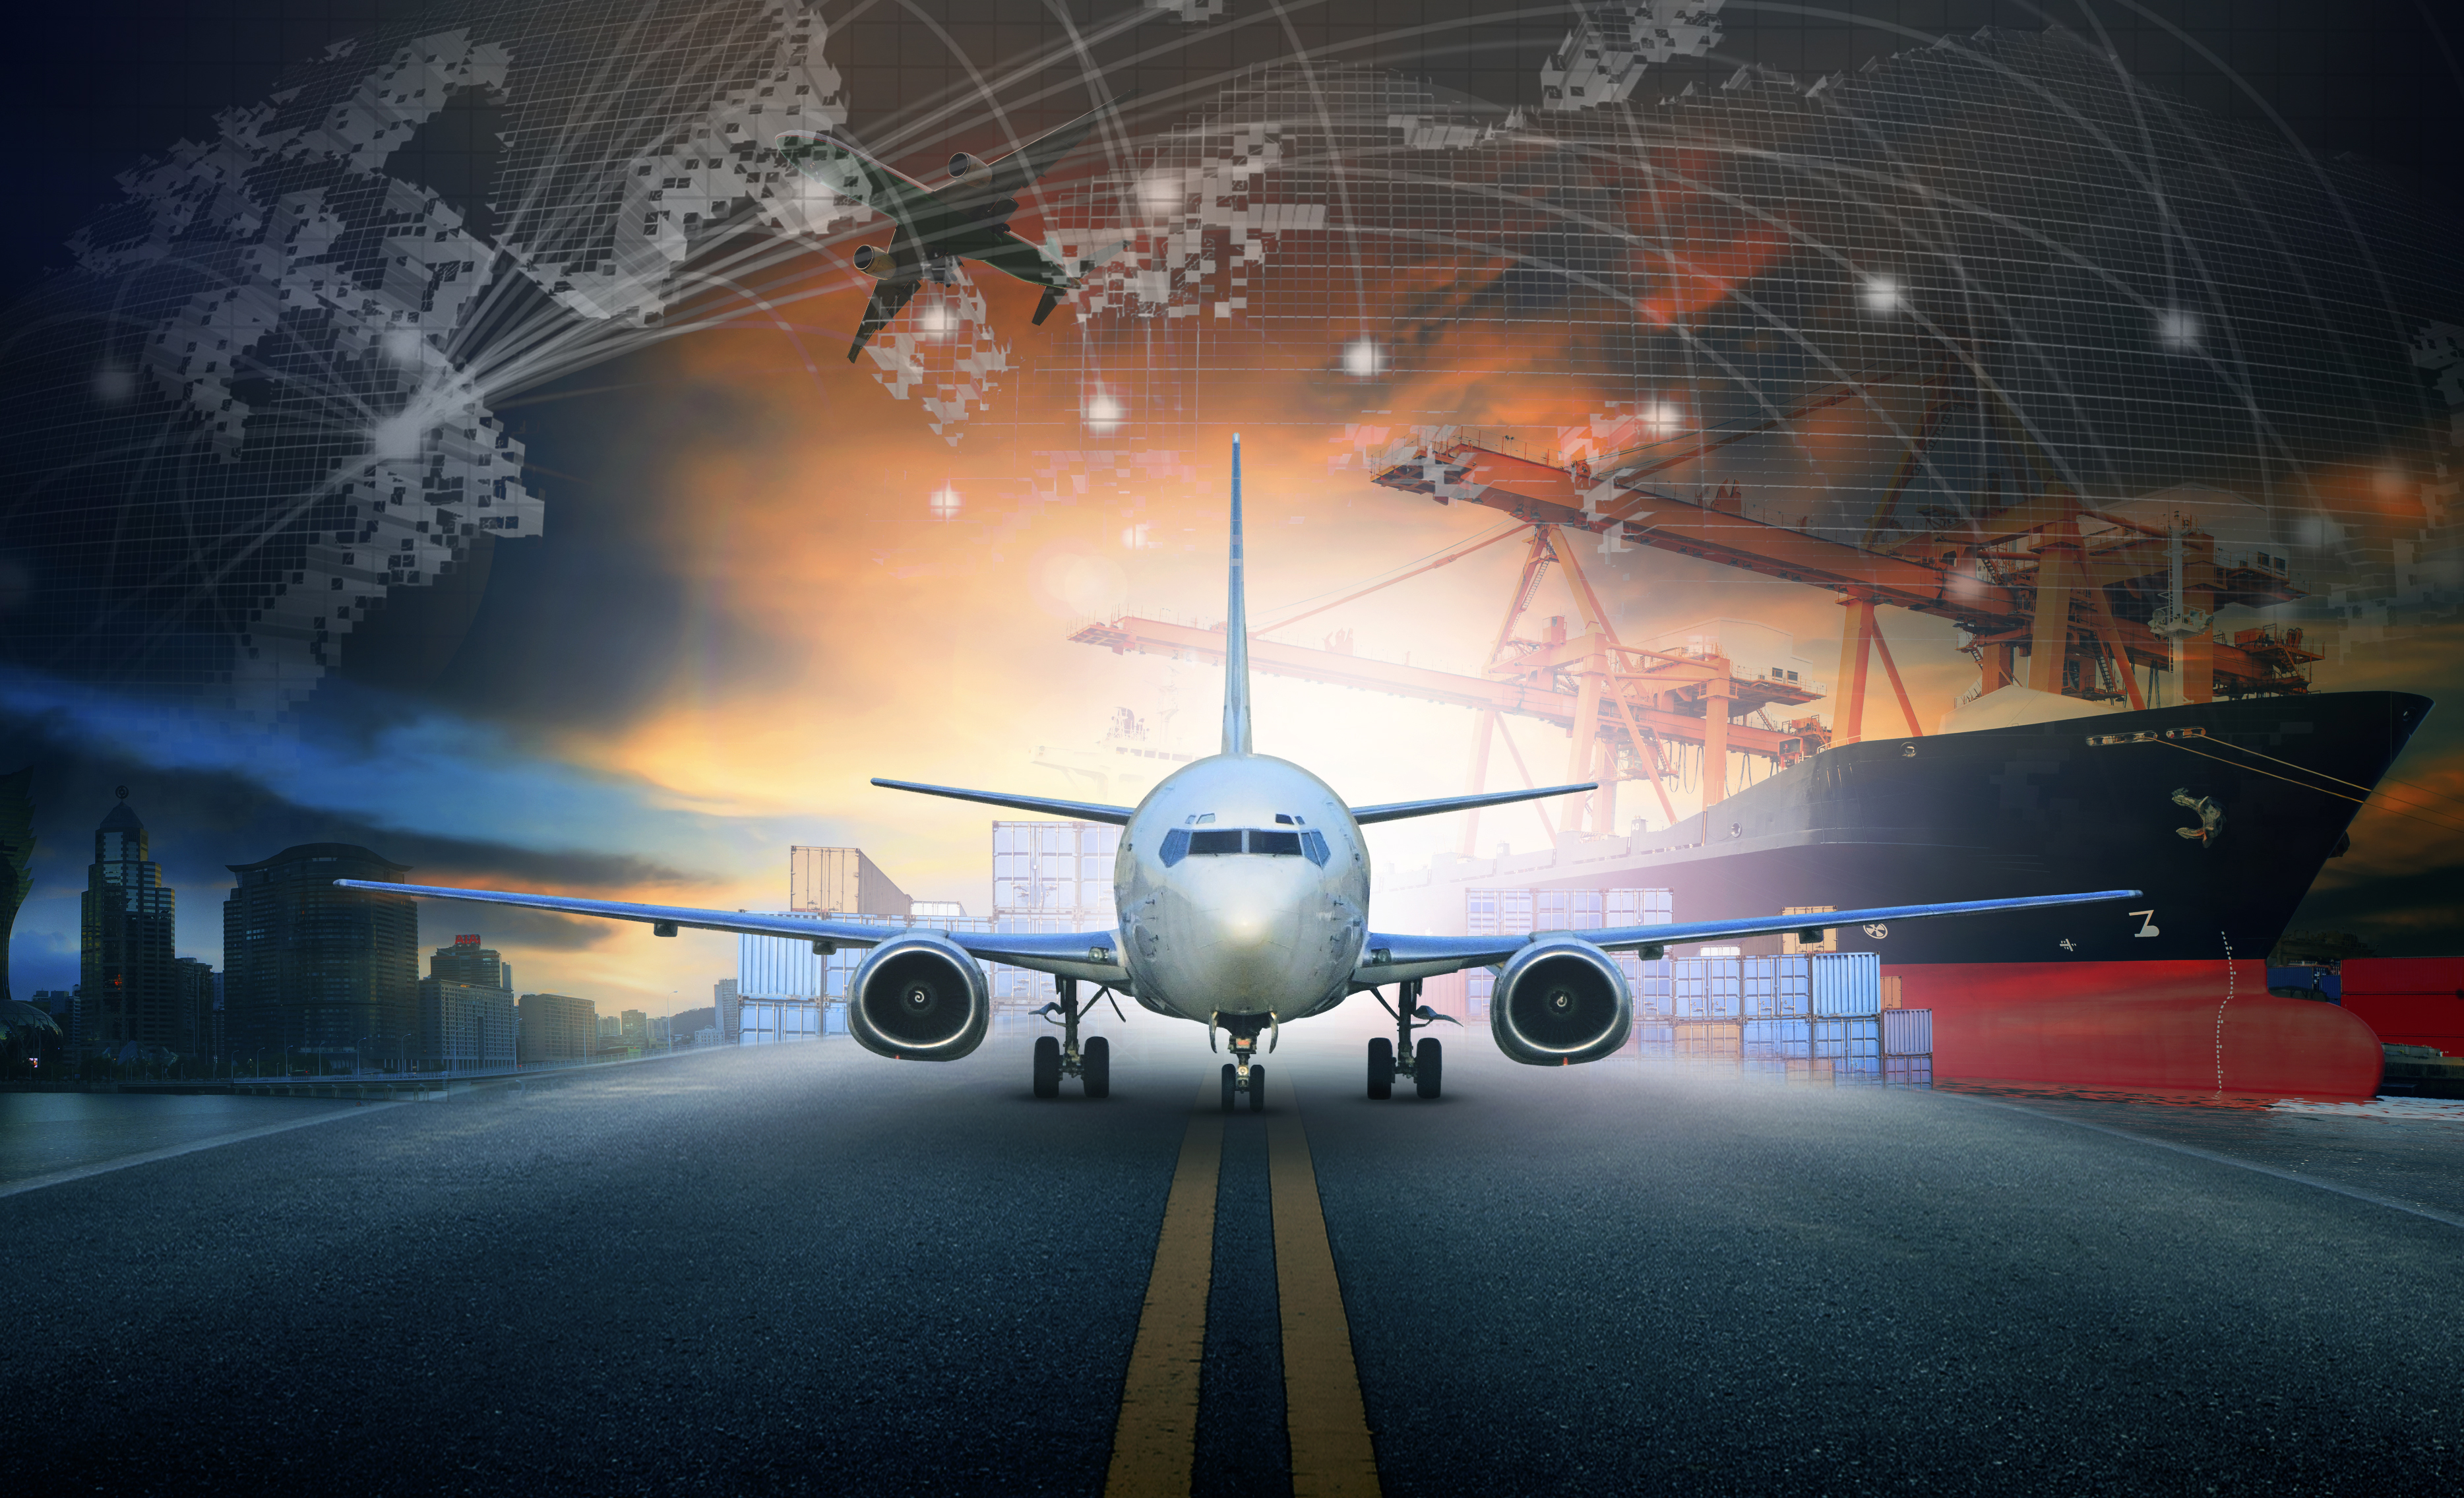 درآمد میں جہاز لوڈ کرنے والا کنٹینر - ٹرانسپورٹ اور فریٹ لاجسٹک کاروباری صنعت کے پس منظر میں ہوائی اڈے کے استعمال میں برآمدی گھاٹ اور ہوائی کارگو ہوائی جہاز کا نقطہ نظر